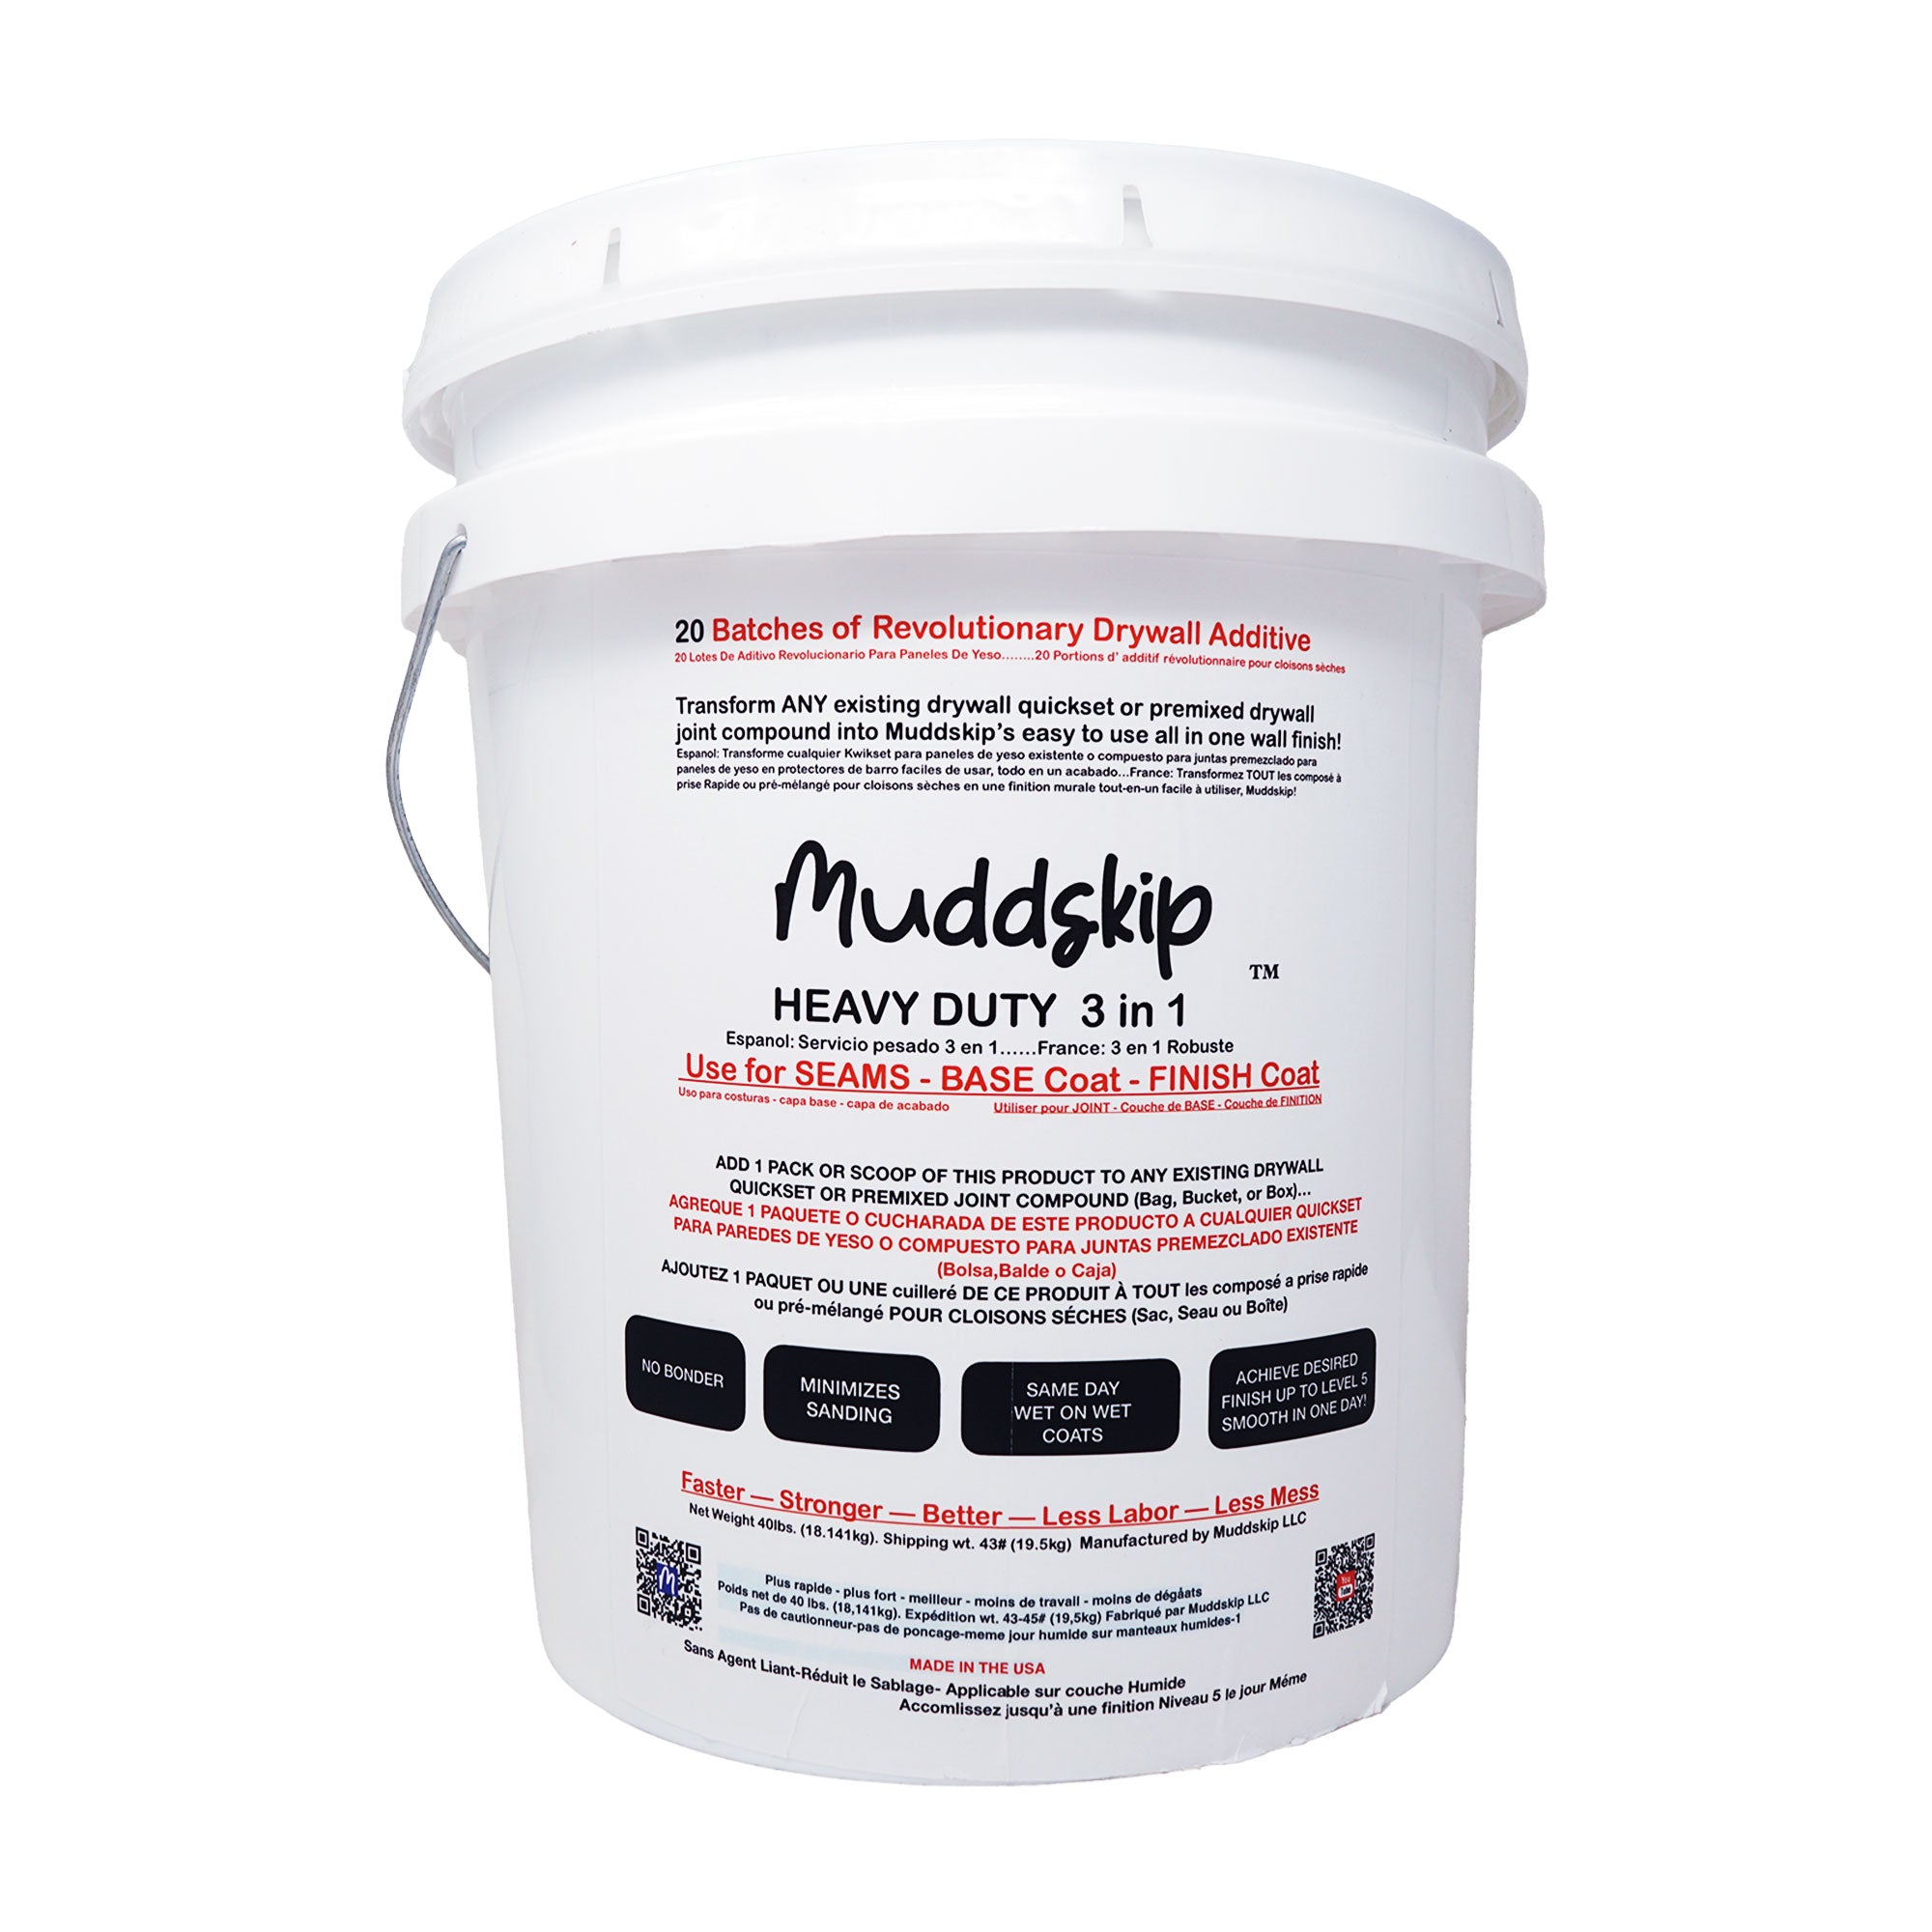 Muddskip Heavy Duty 3-in-1 Drywall Additive